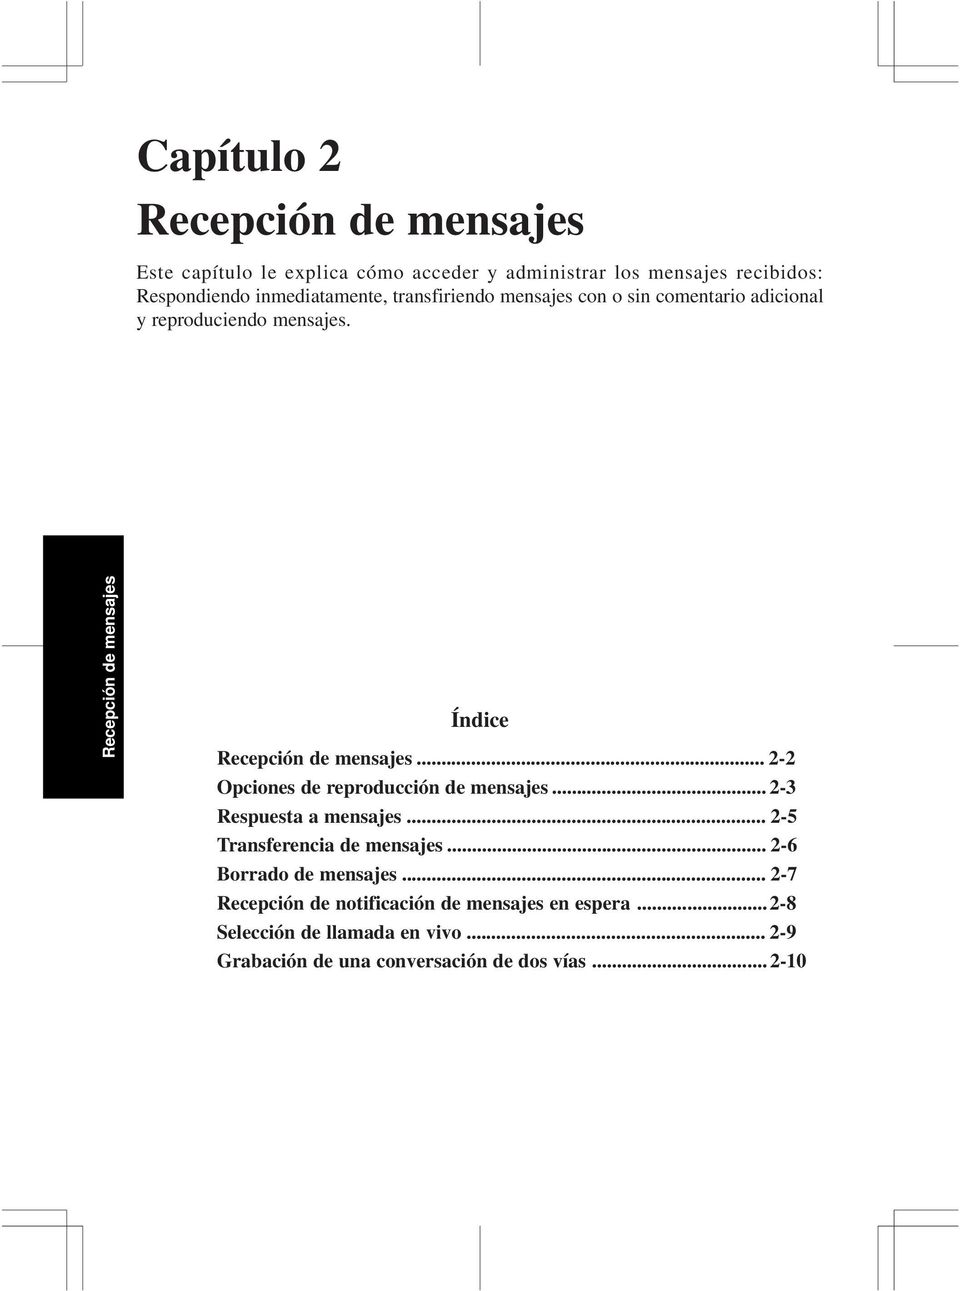 Recepción de mensajes Índice Recepción de mensajes... - Opciones de reproducción de mensajes... -3 Respuesta a mensajes.